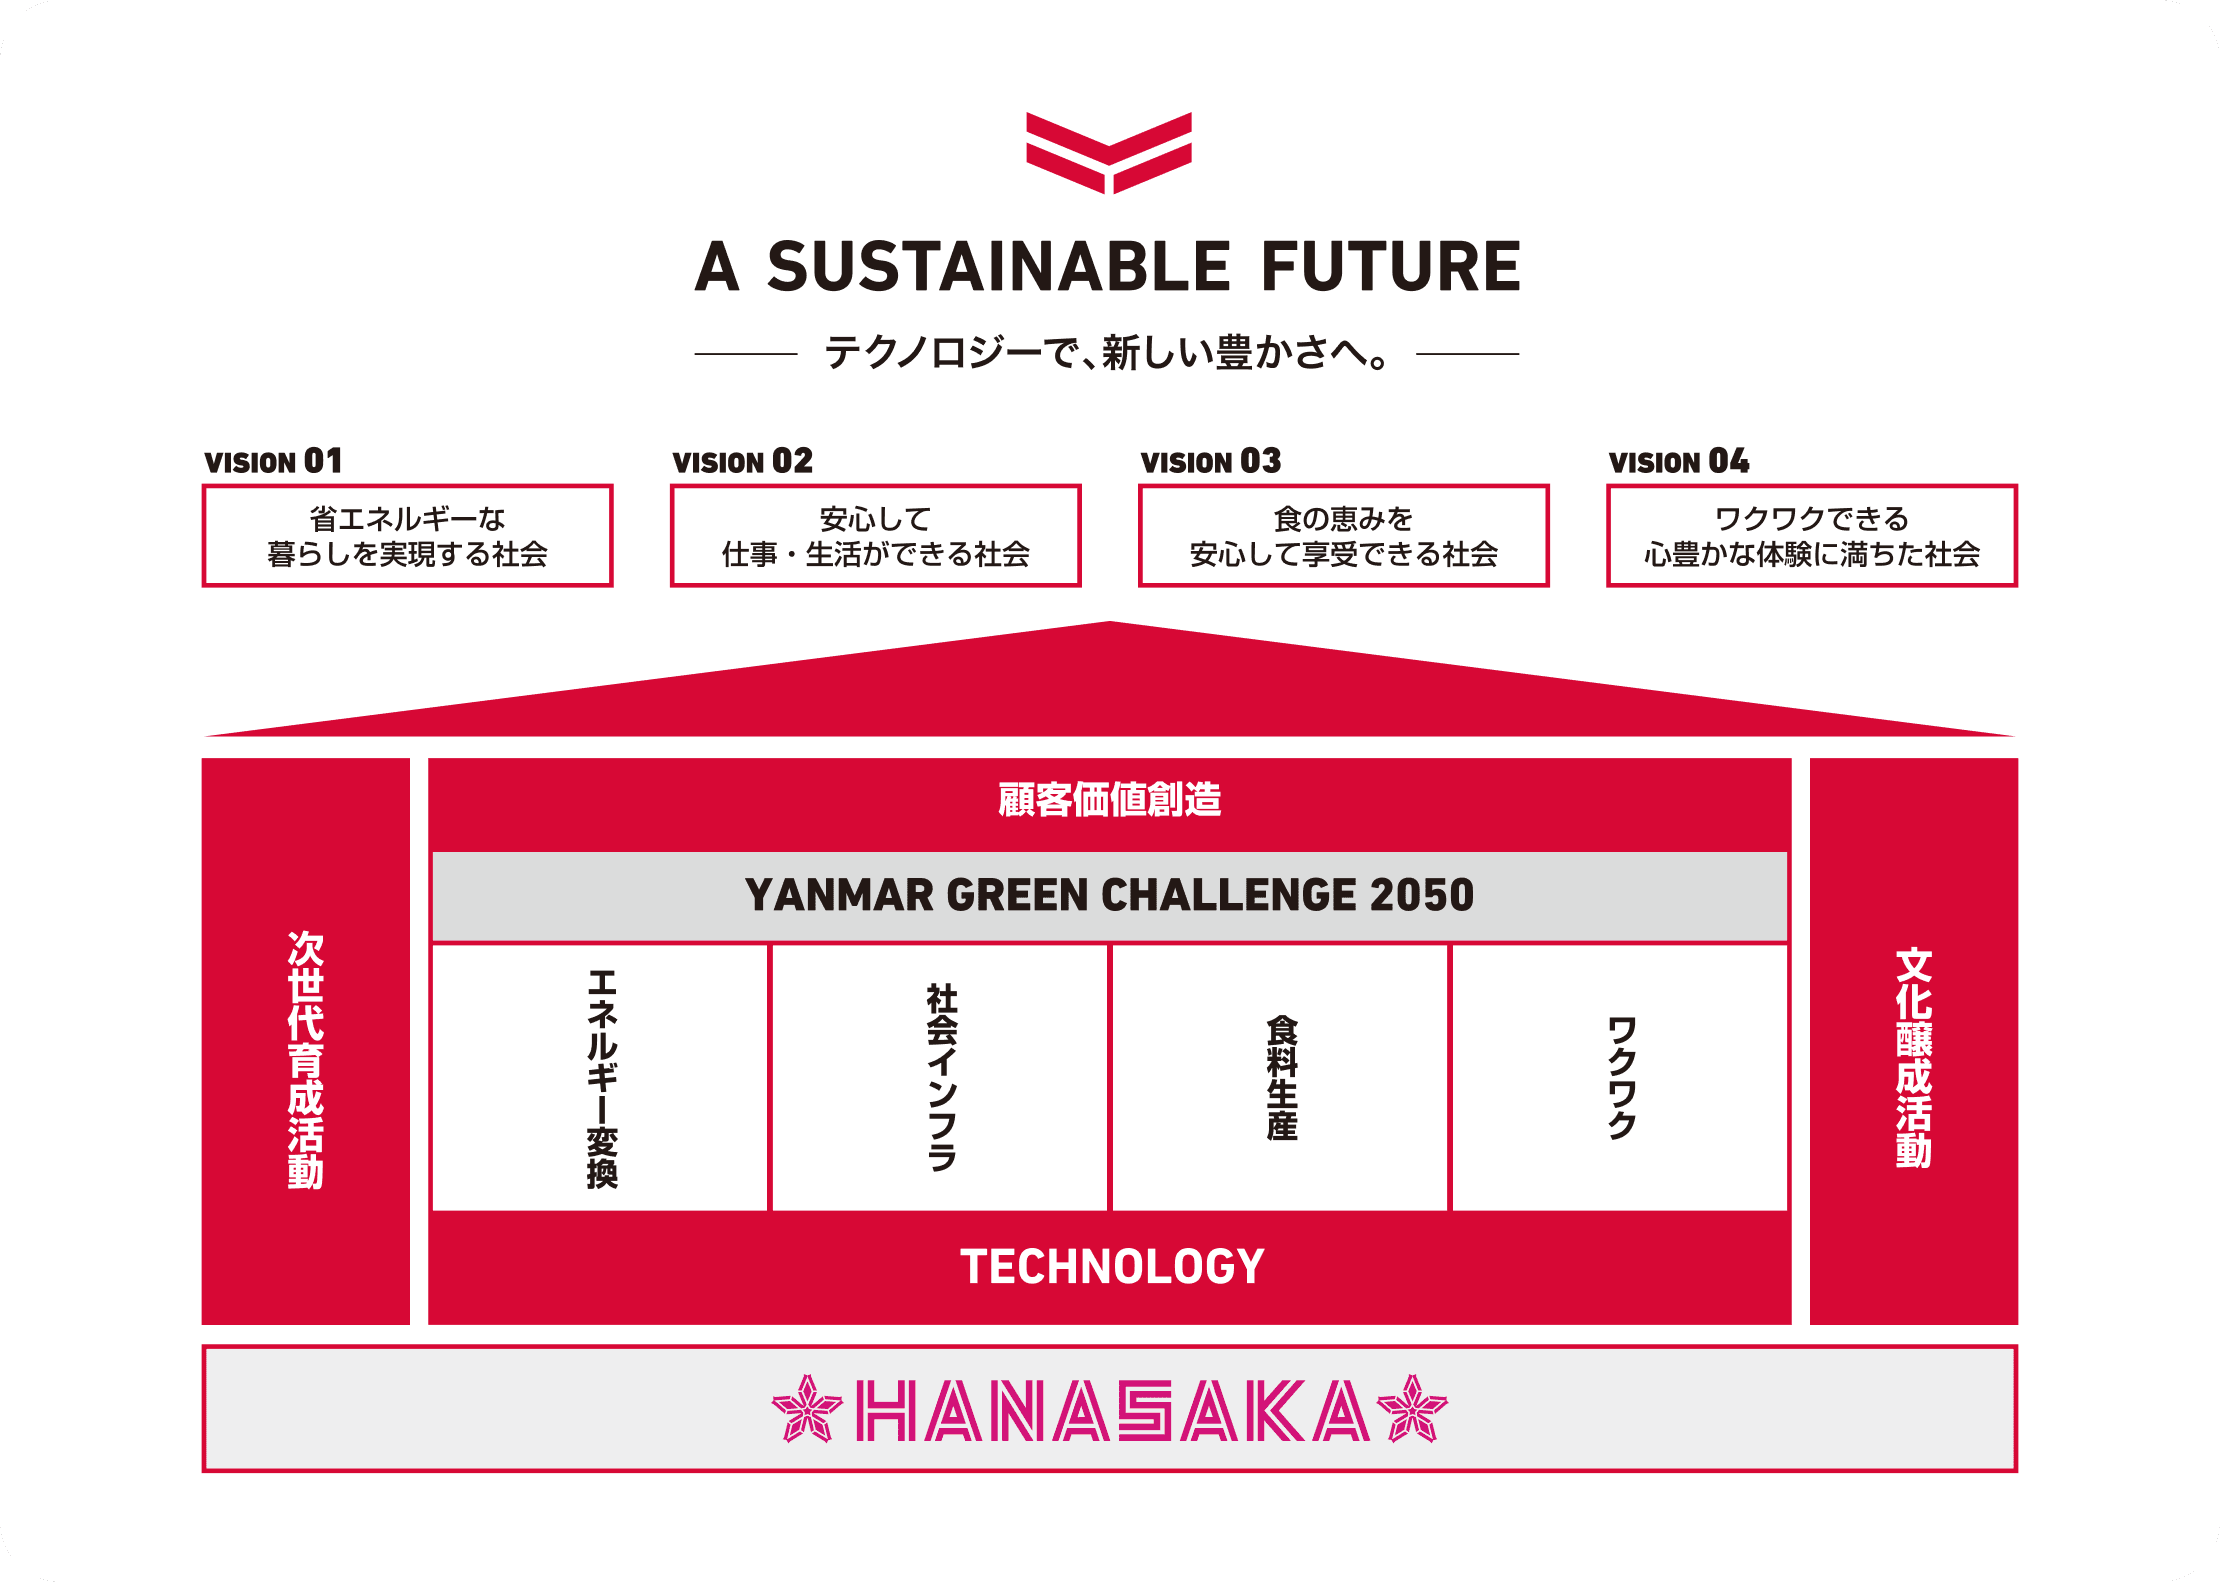 「HANASAKA(ハナサカ)」を土台に、各事業活動、「FUTURE VISION」で掲げる4つの社会、「A SUSTAINABLE FUTURE」が順に積み上げられた図